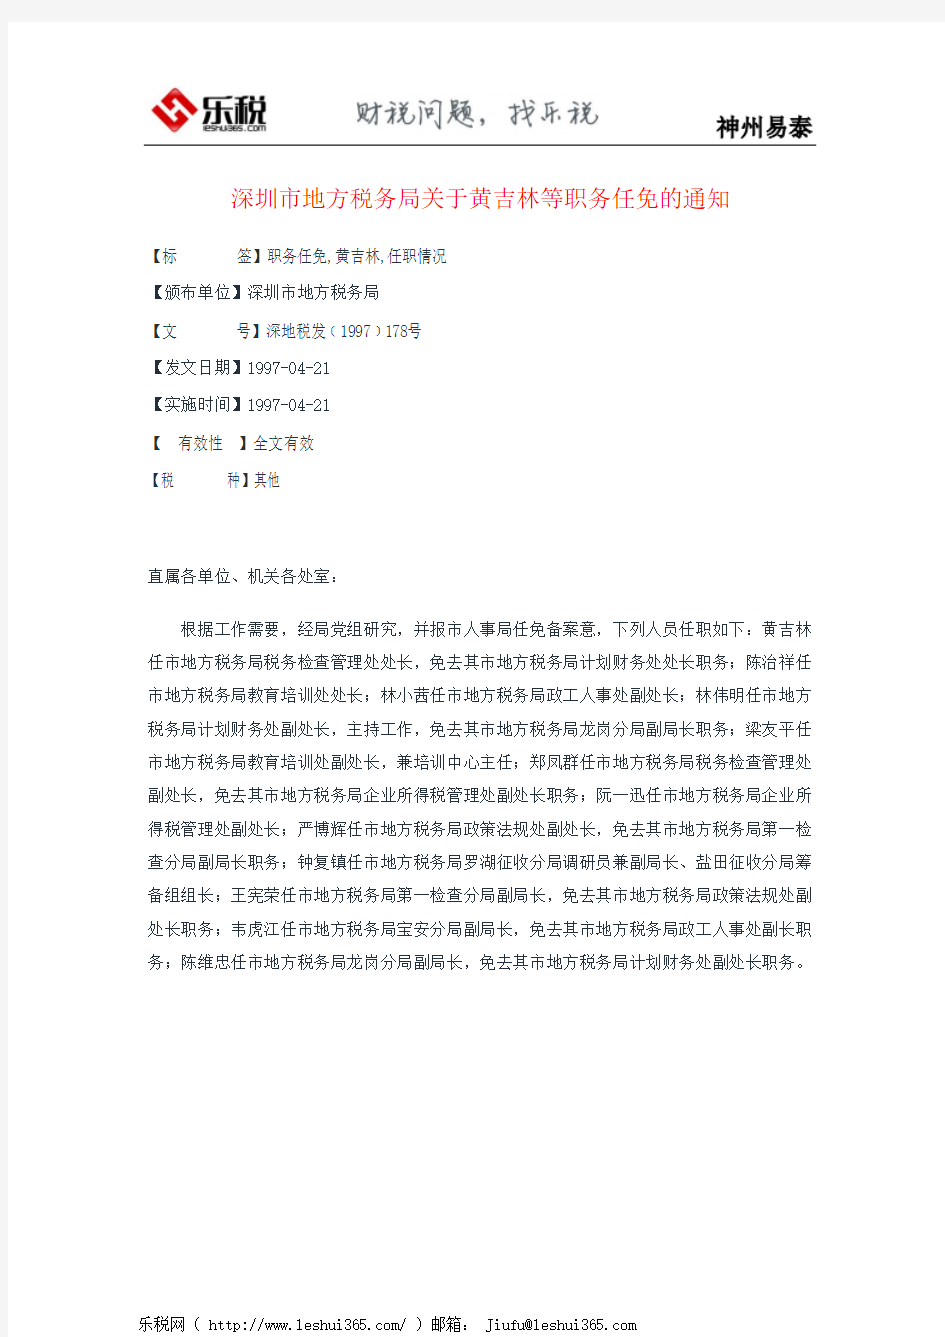 深圳市地方税务局关于黄吉林等职务任免的通知